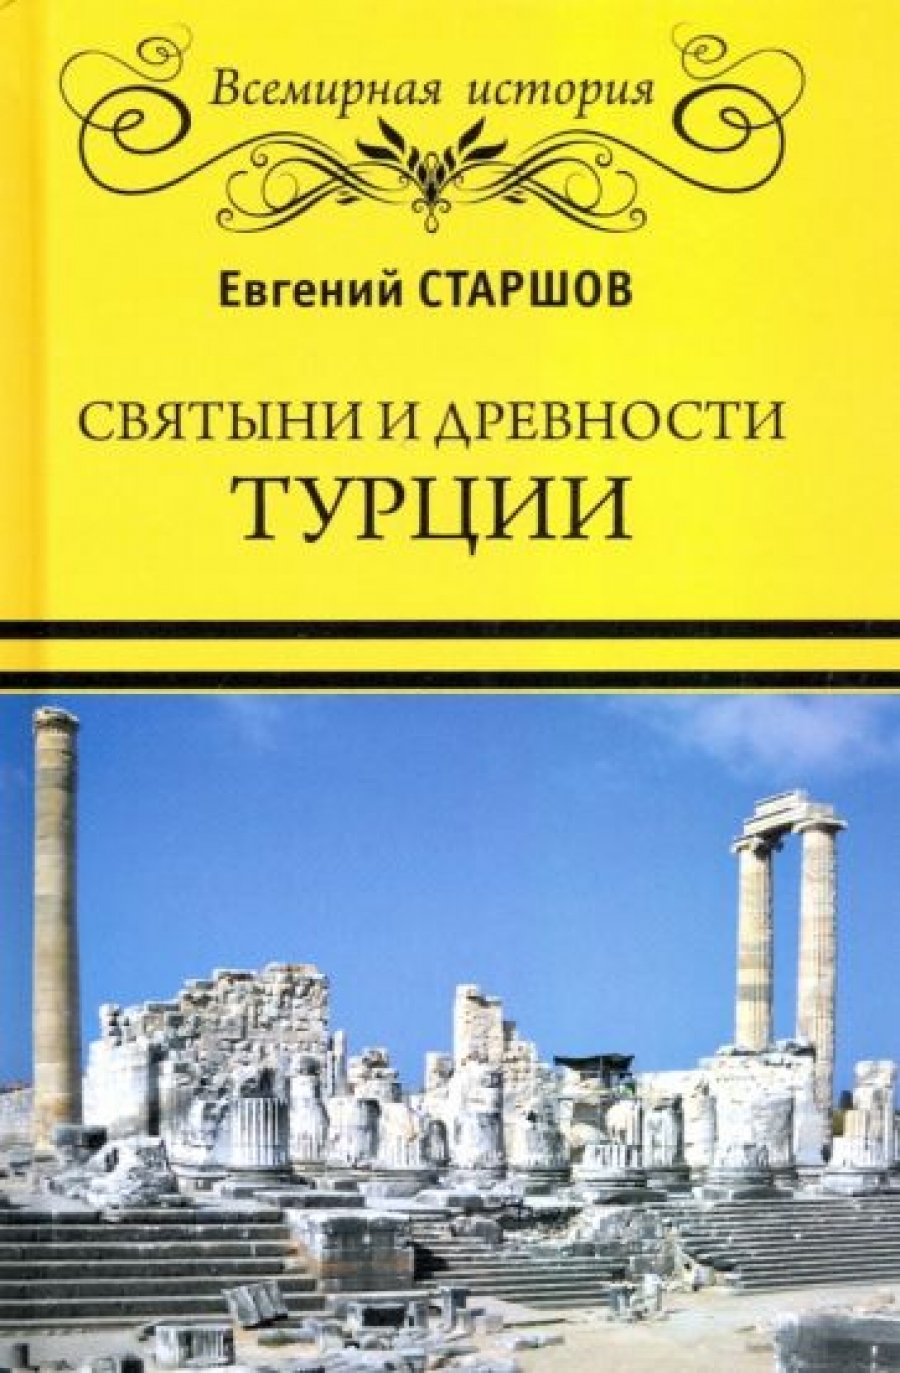 Старшов Е.В. Святыни и древности Турции 